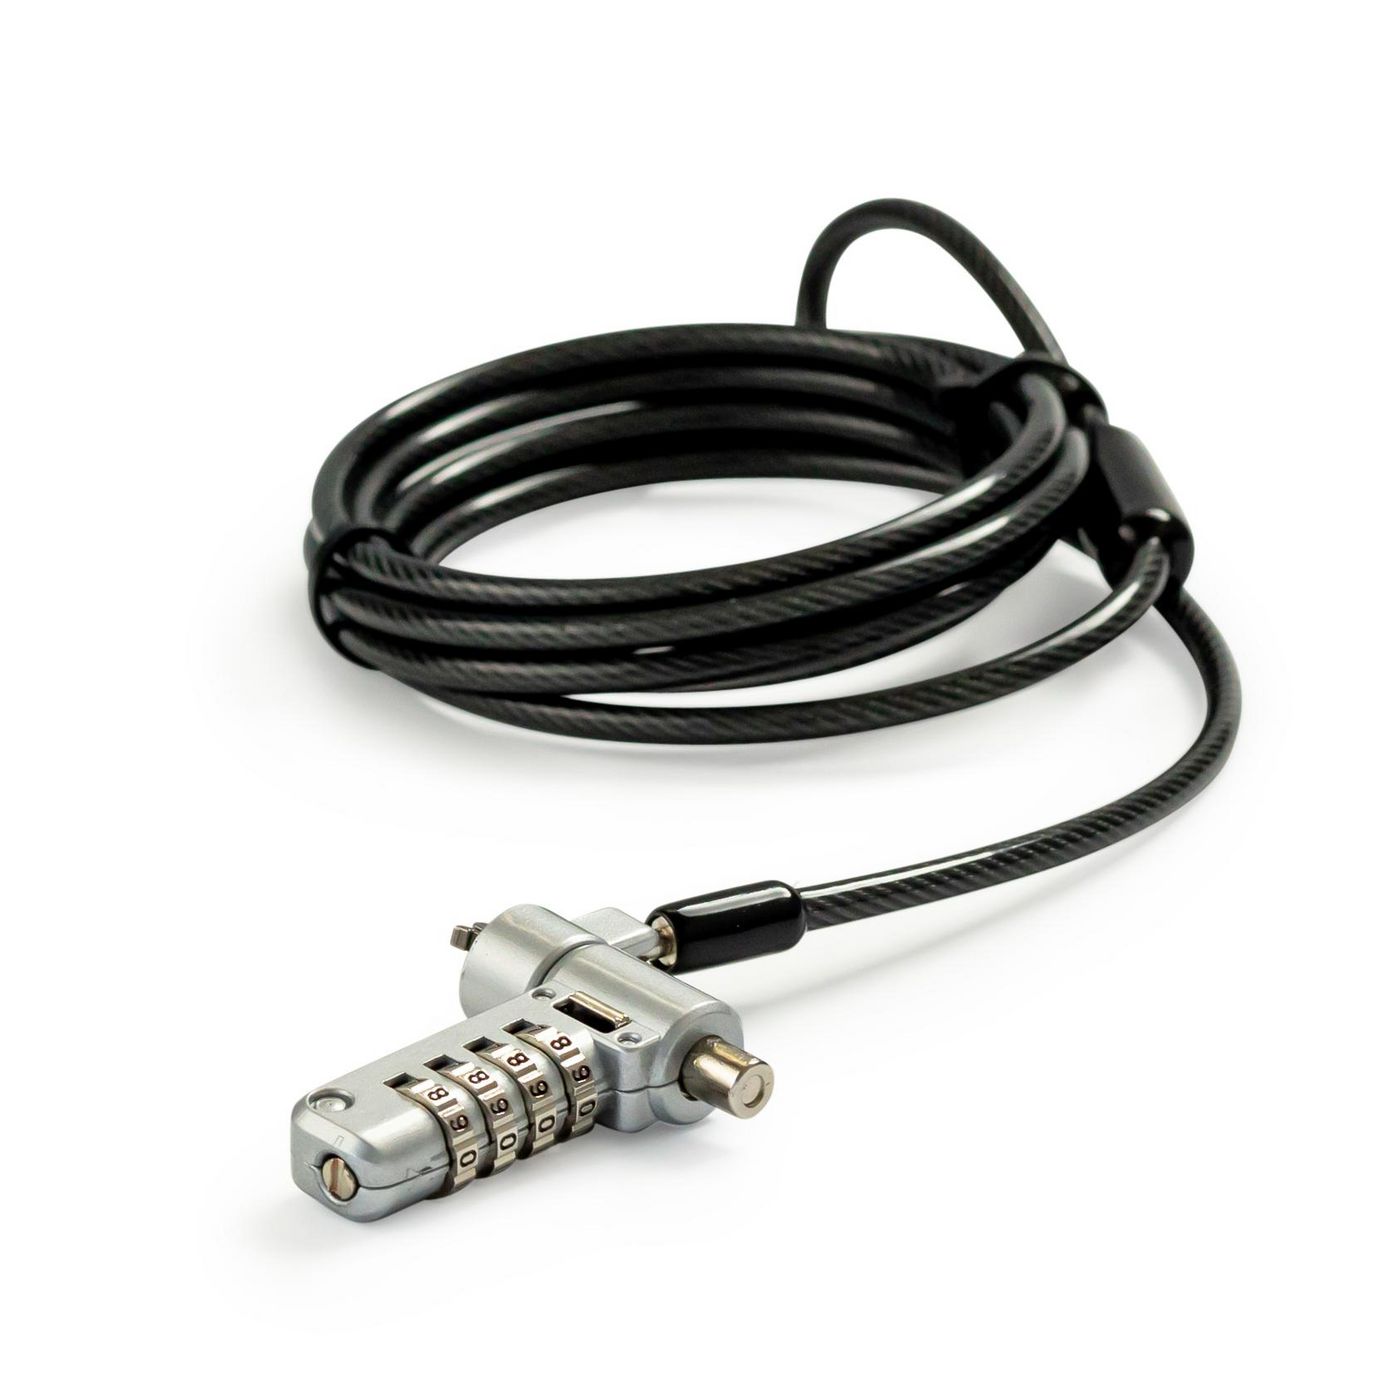 Tech-Air TALUC07 W128297379 Cable Lock Black, Silver 2 M 